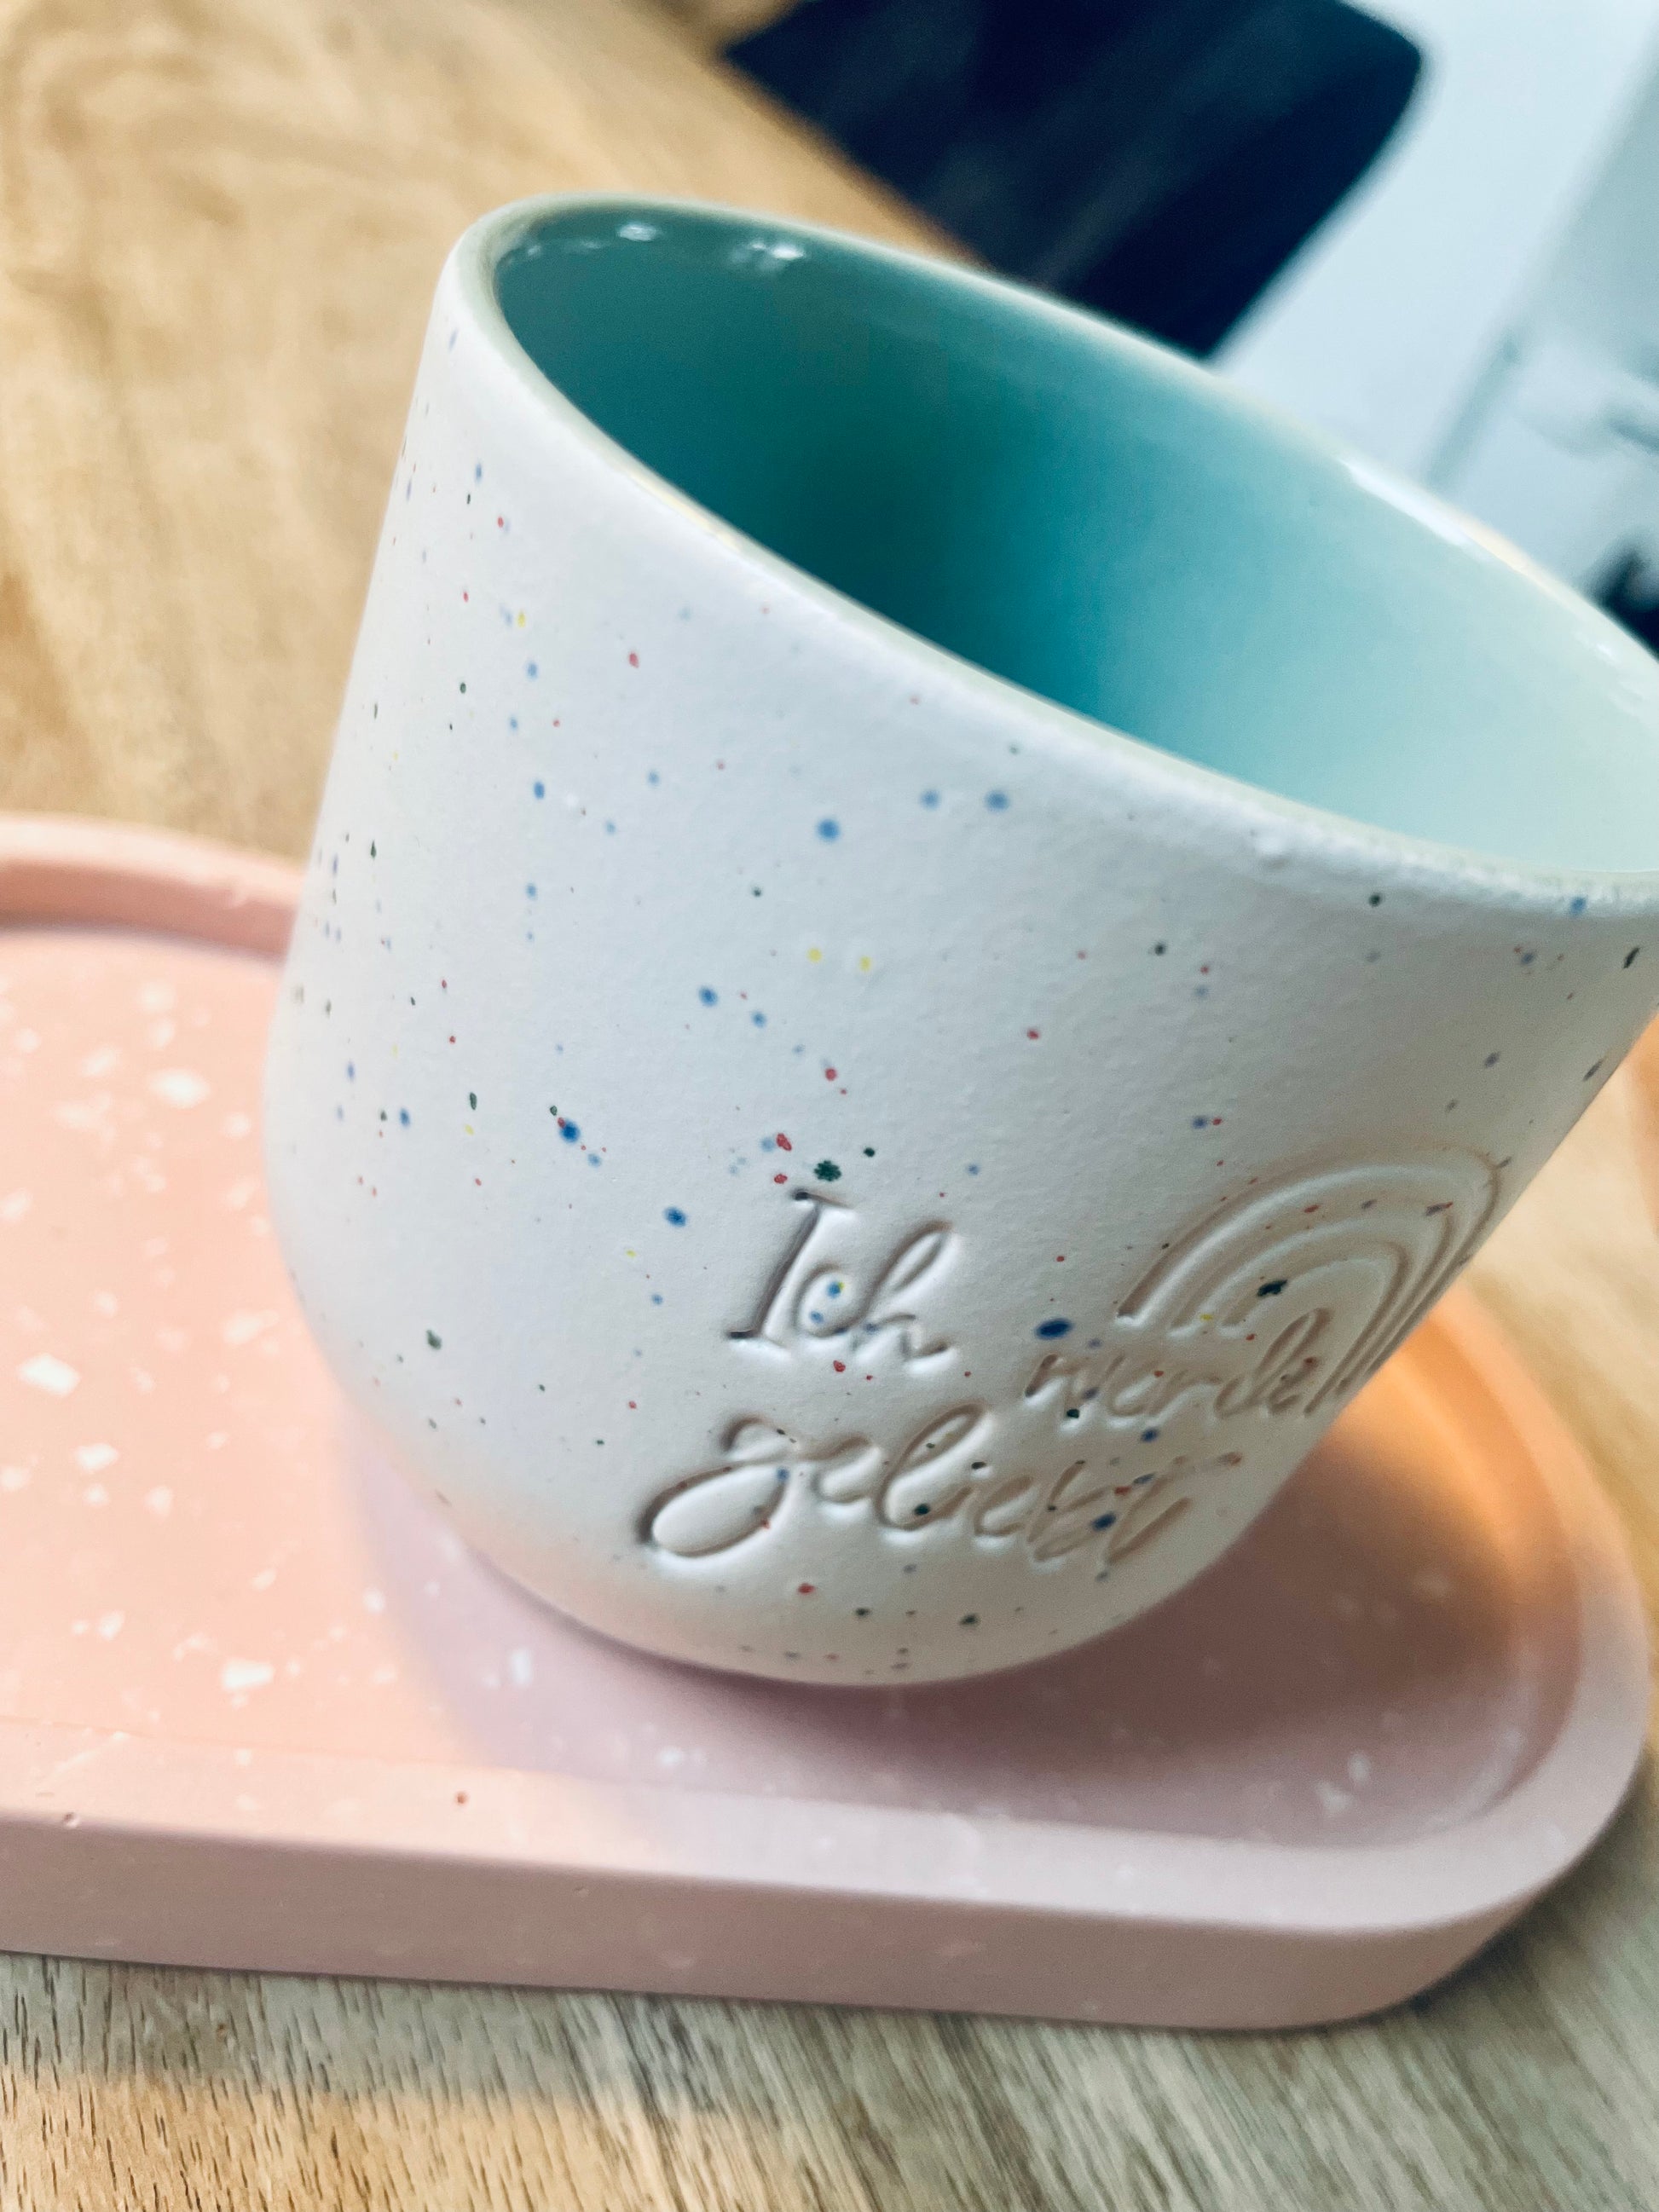 Handgemachter Keramik Becher von "Dear Benno" aus Steingut in der Farbe Salbei mit kleinen& fröhlichen Farbtupfern. Dazu die Aufschrift: "Ich werde geliebt"